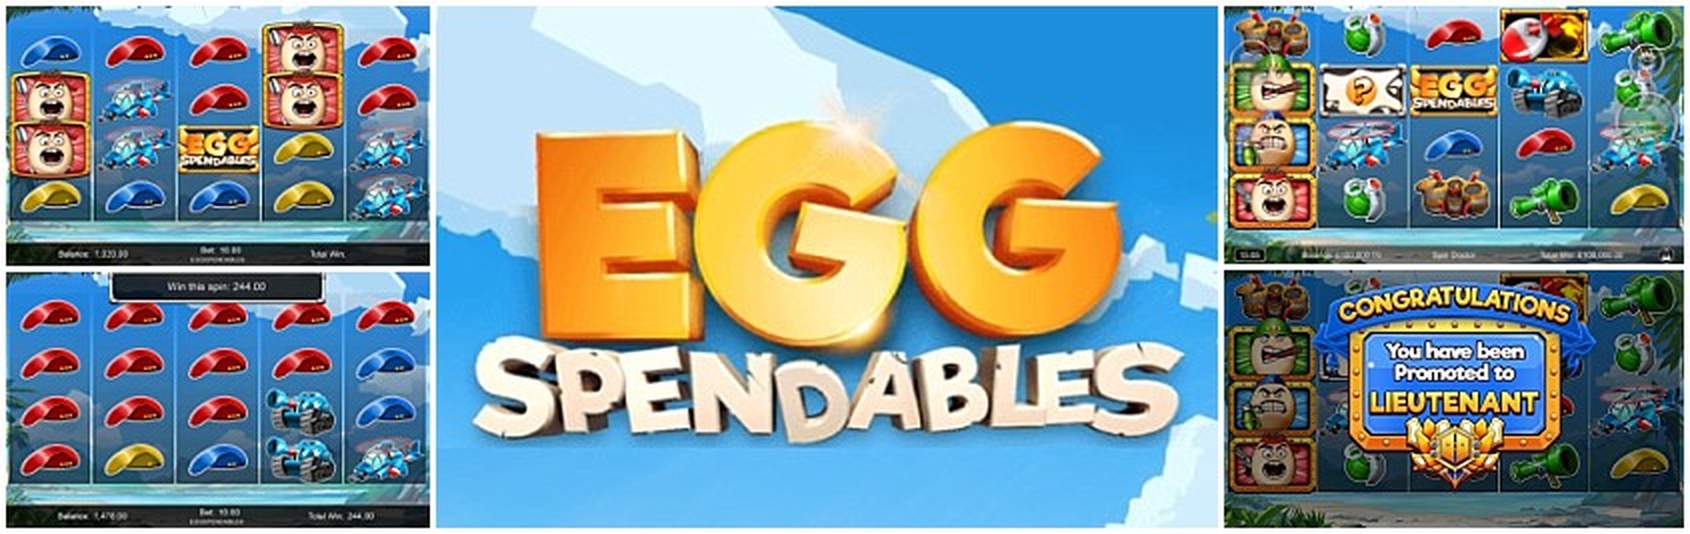 Eggspendables demo